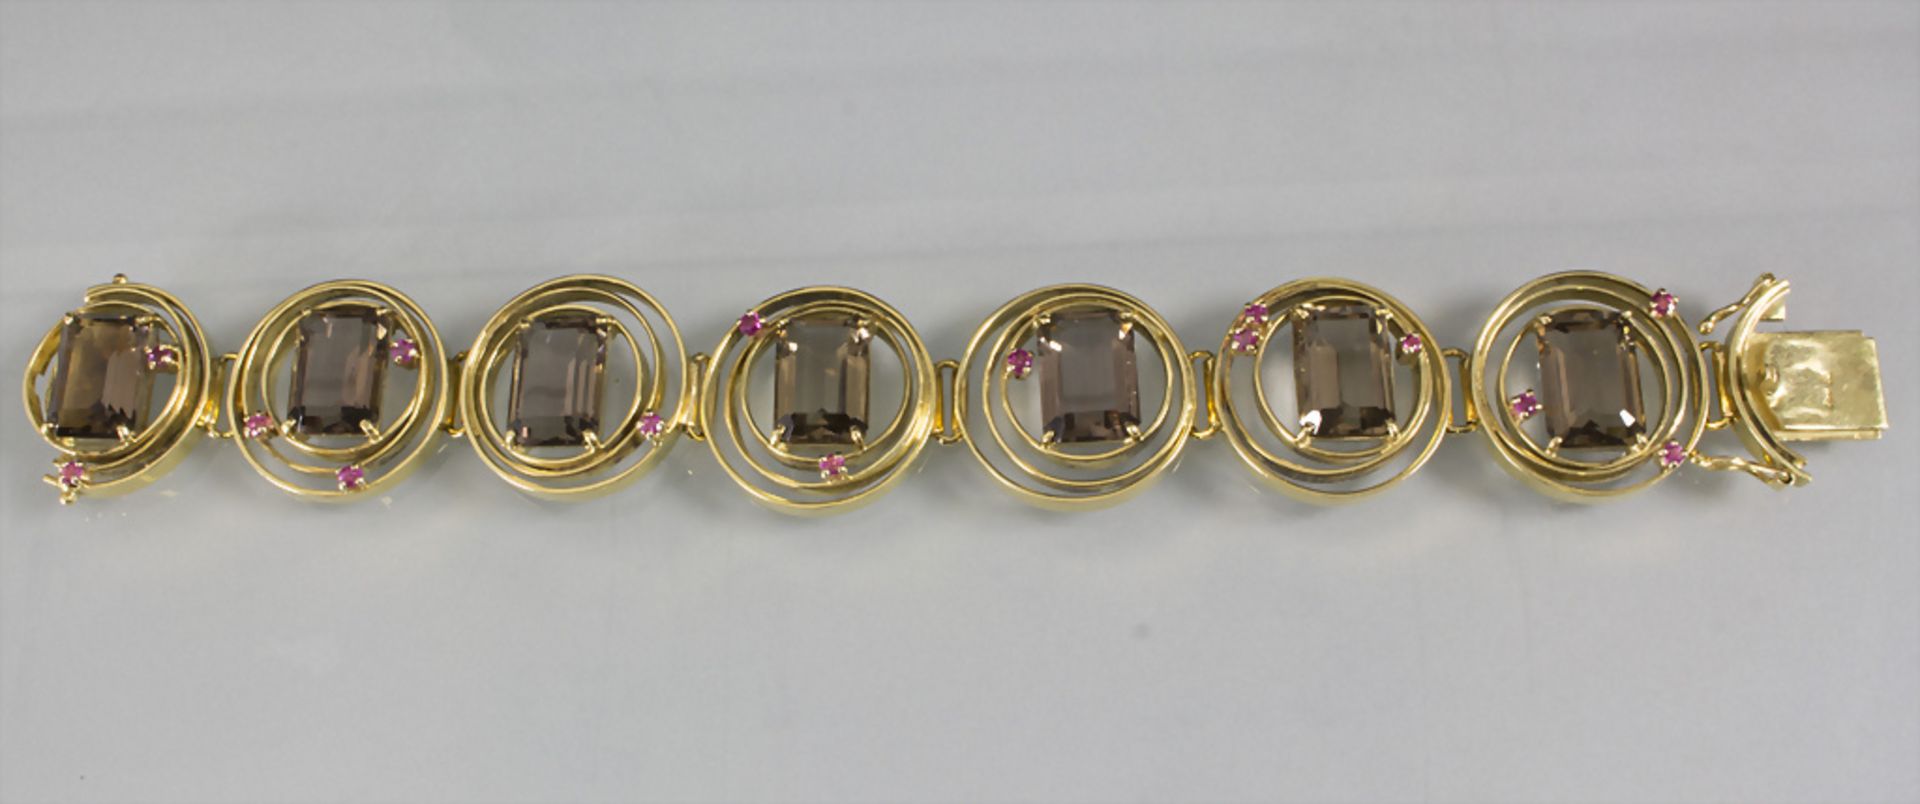 Armband mit Rauchtopas und Rubinen / A 18ct gold bracelet with topas and rubies - Bild 4 aus 6